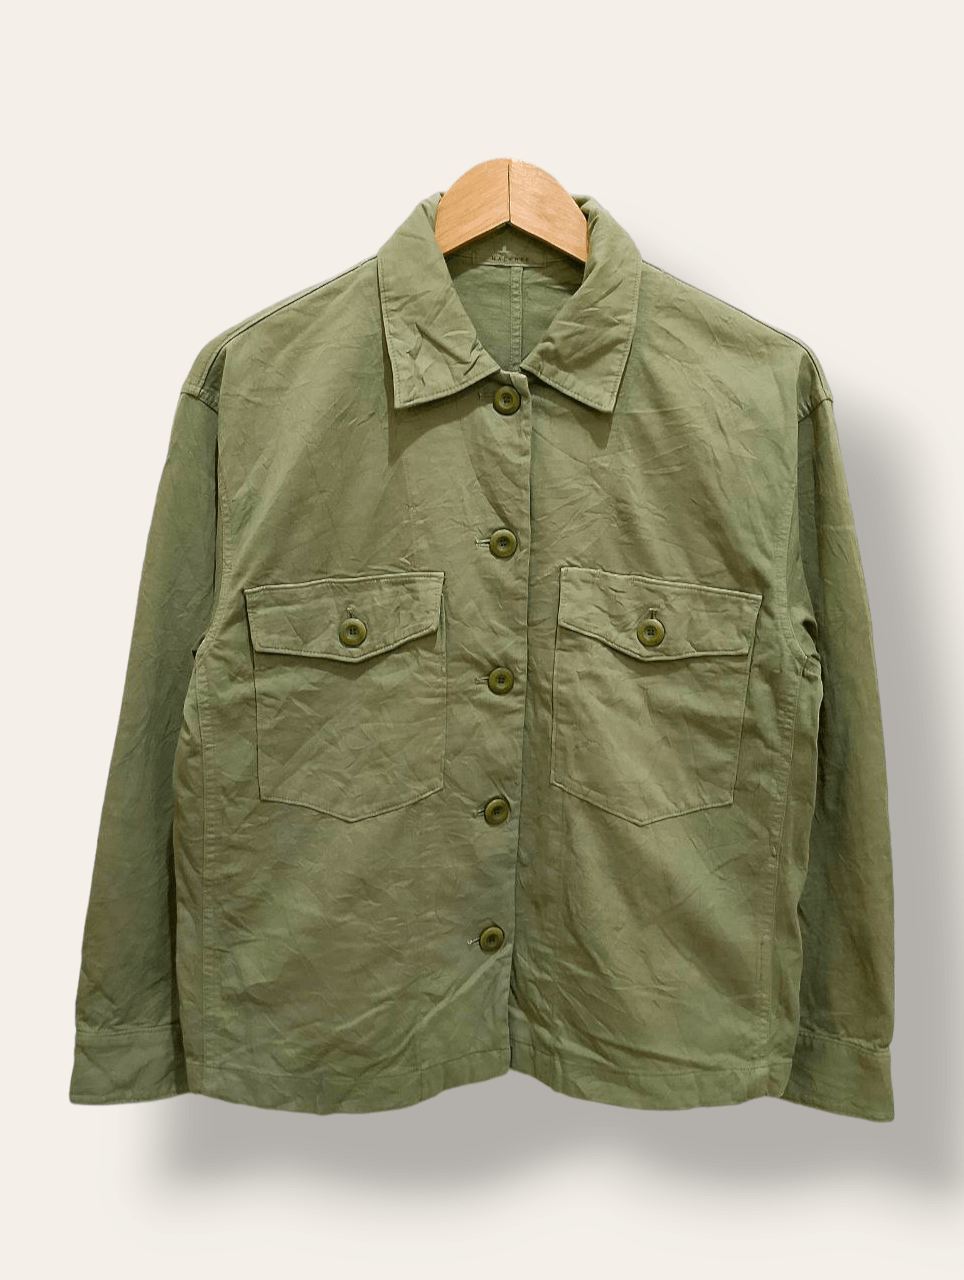 Archival Clothing Macphee Military OG-107 Design Long Sleeve Shirt ...